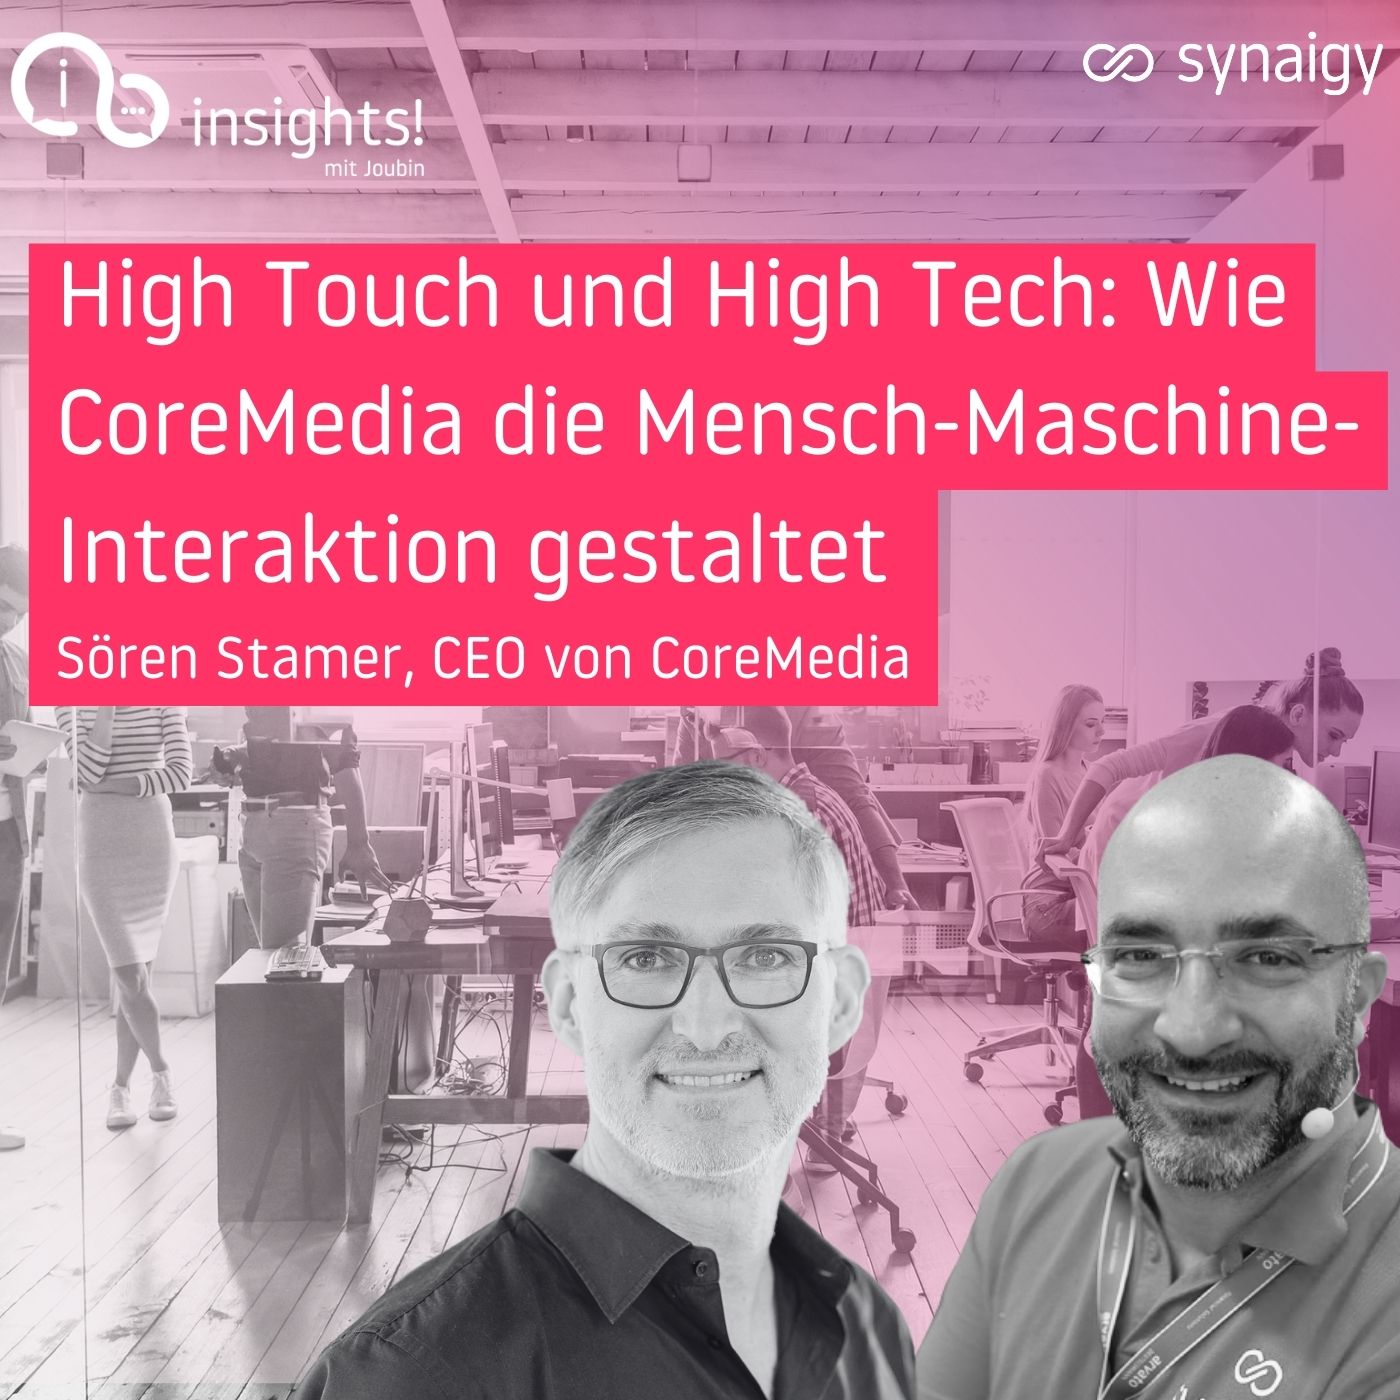 64 High Touch und High Tech: Wie CoreMedia die Mensch-Maschine-Interaktion gestaltet